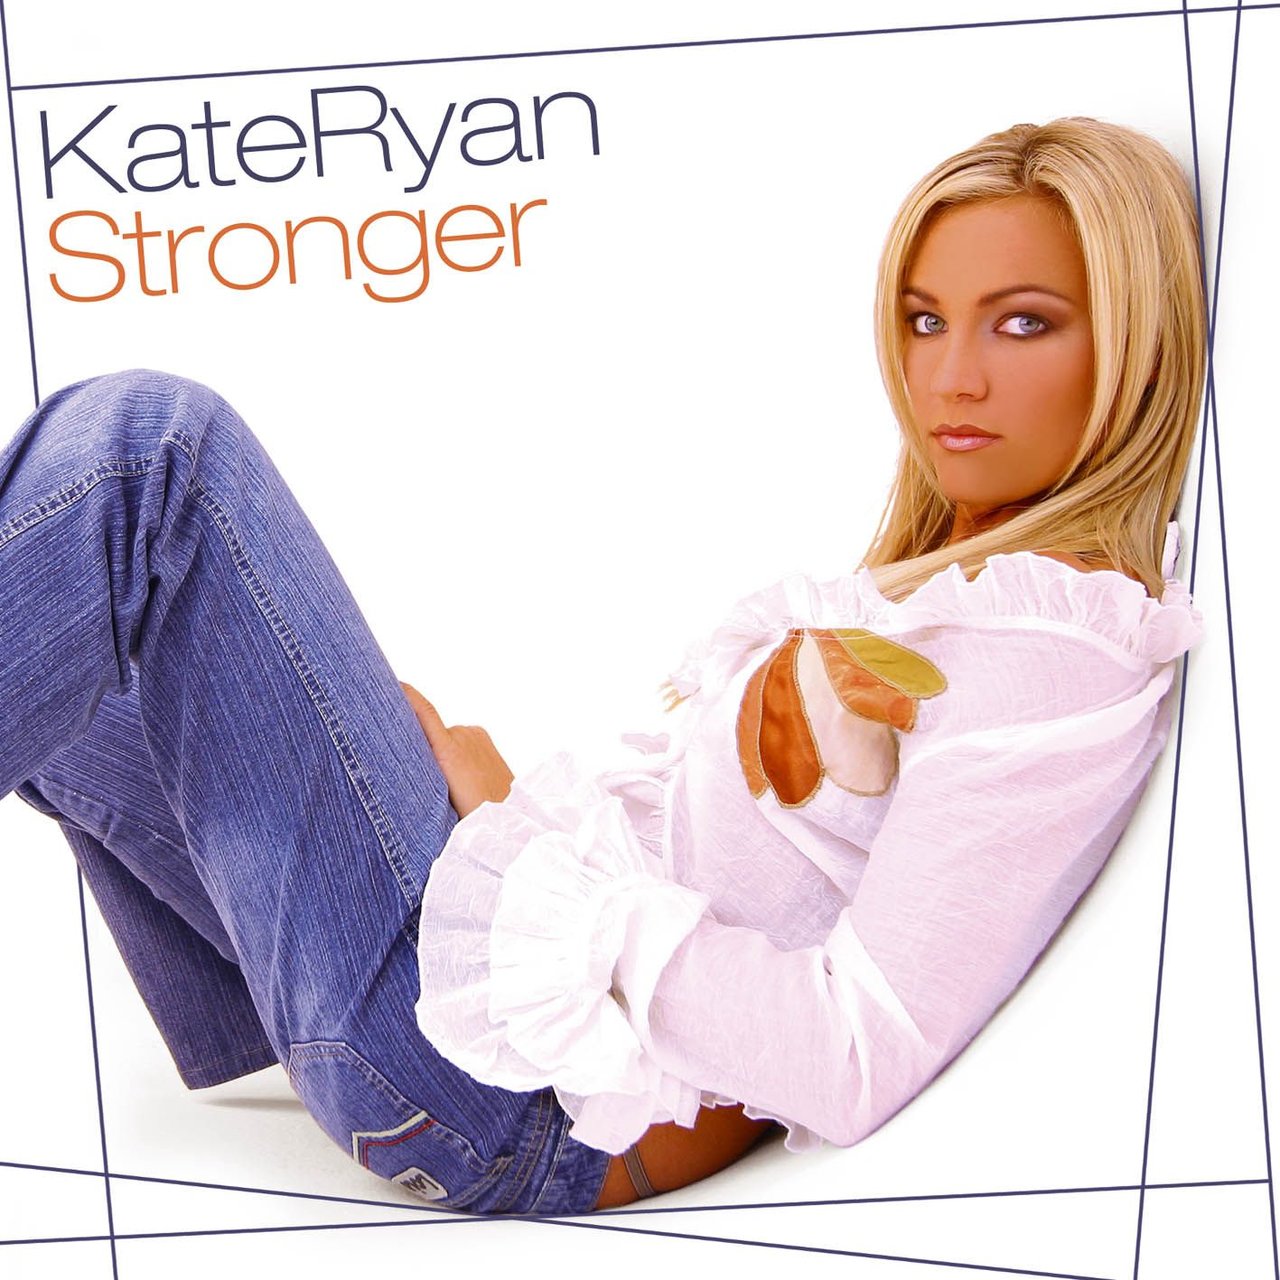 Kate Ryan Stronger cover artwork